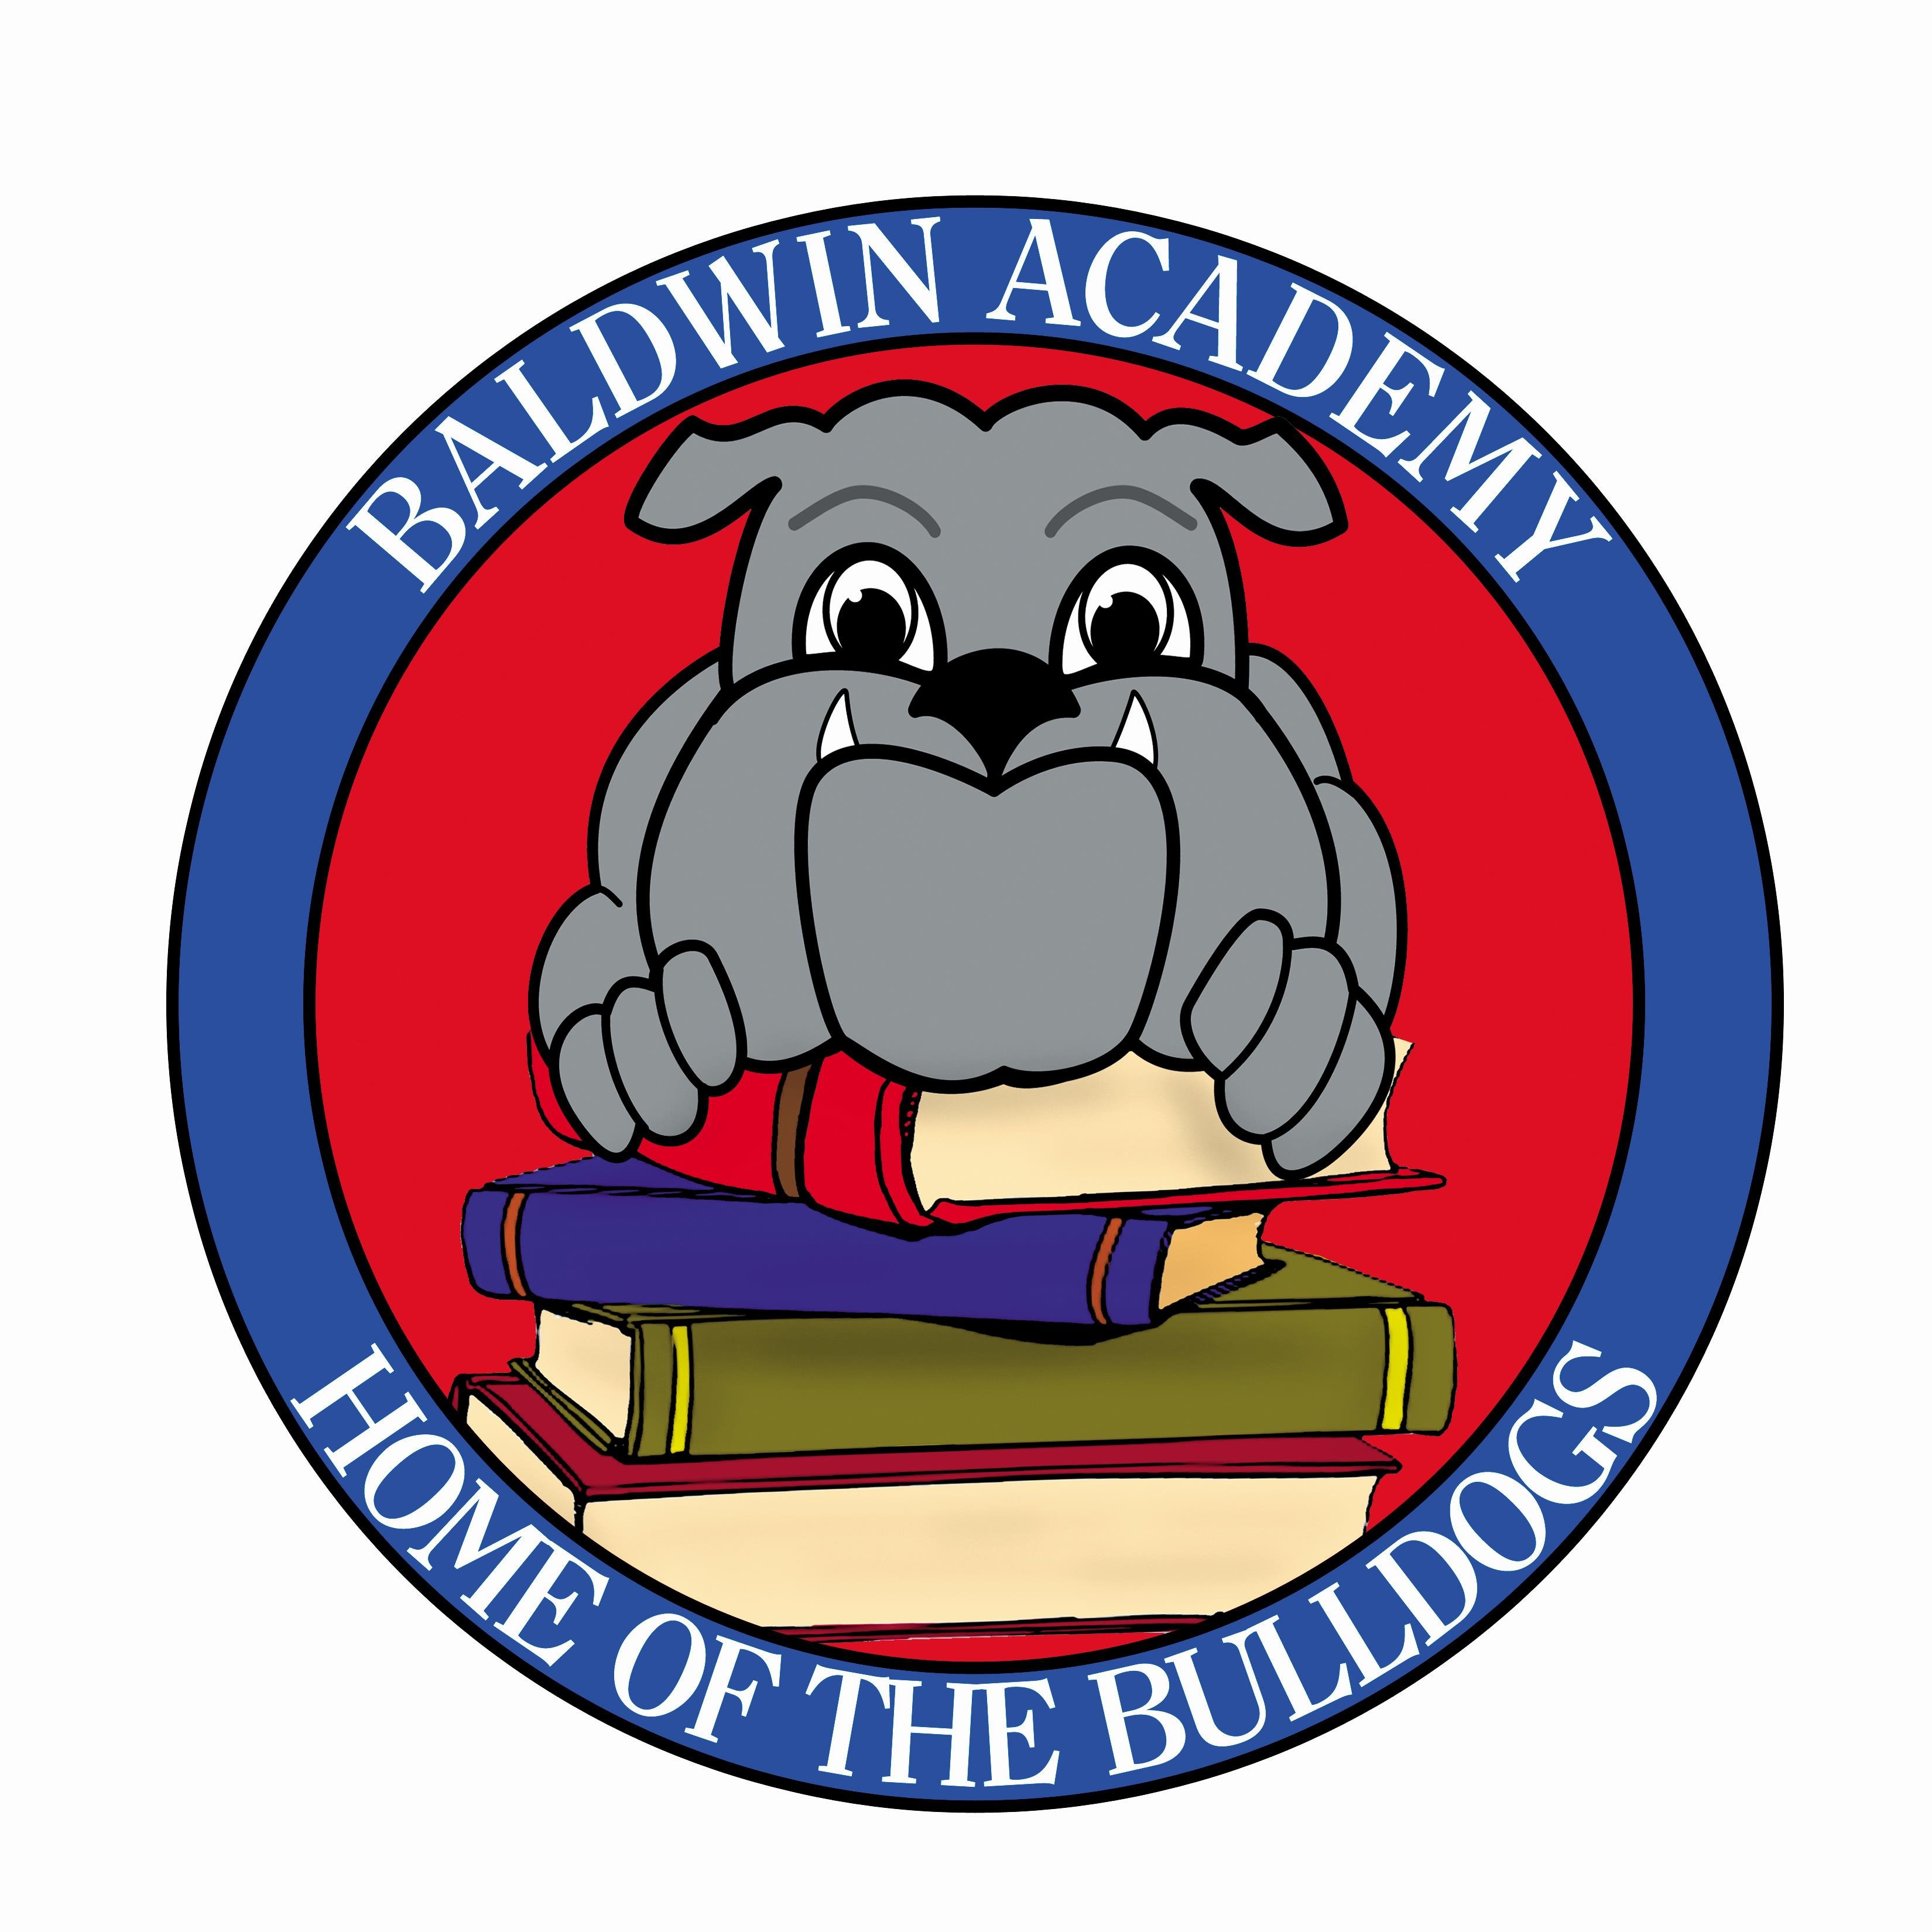 Baldwin Academy
Hacienda La Puente Unified School District